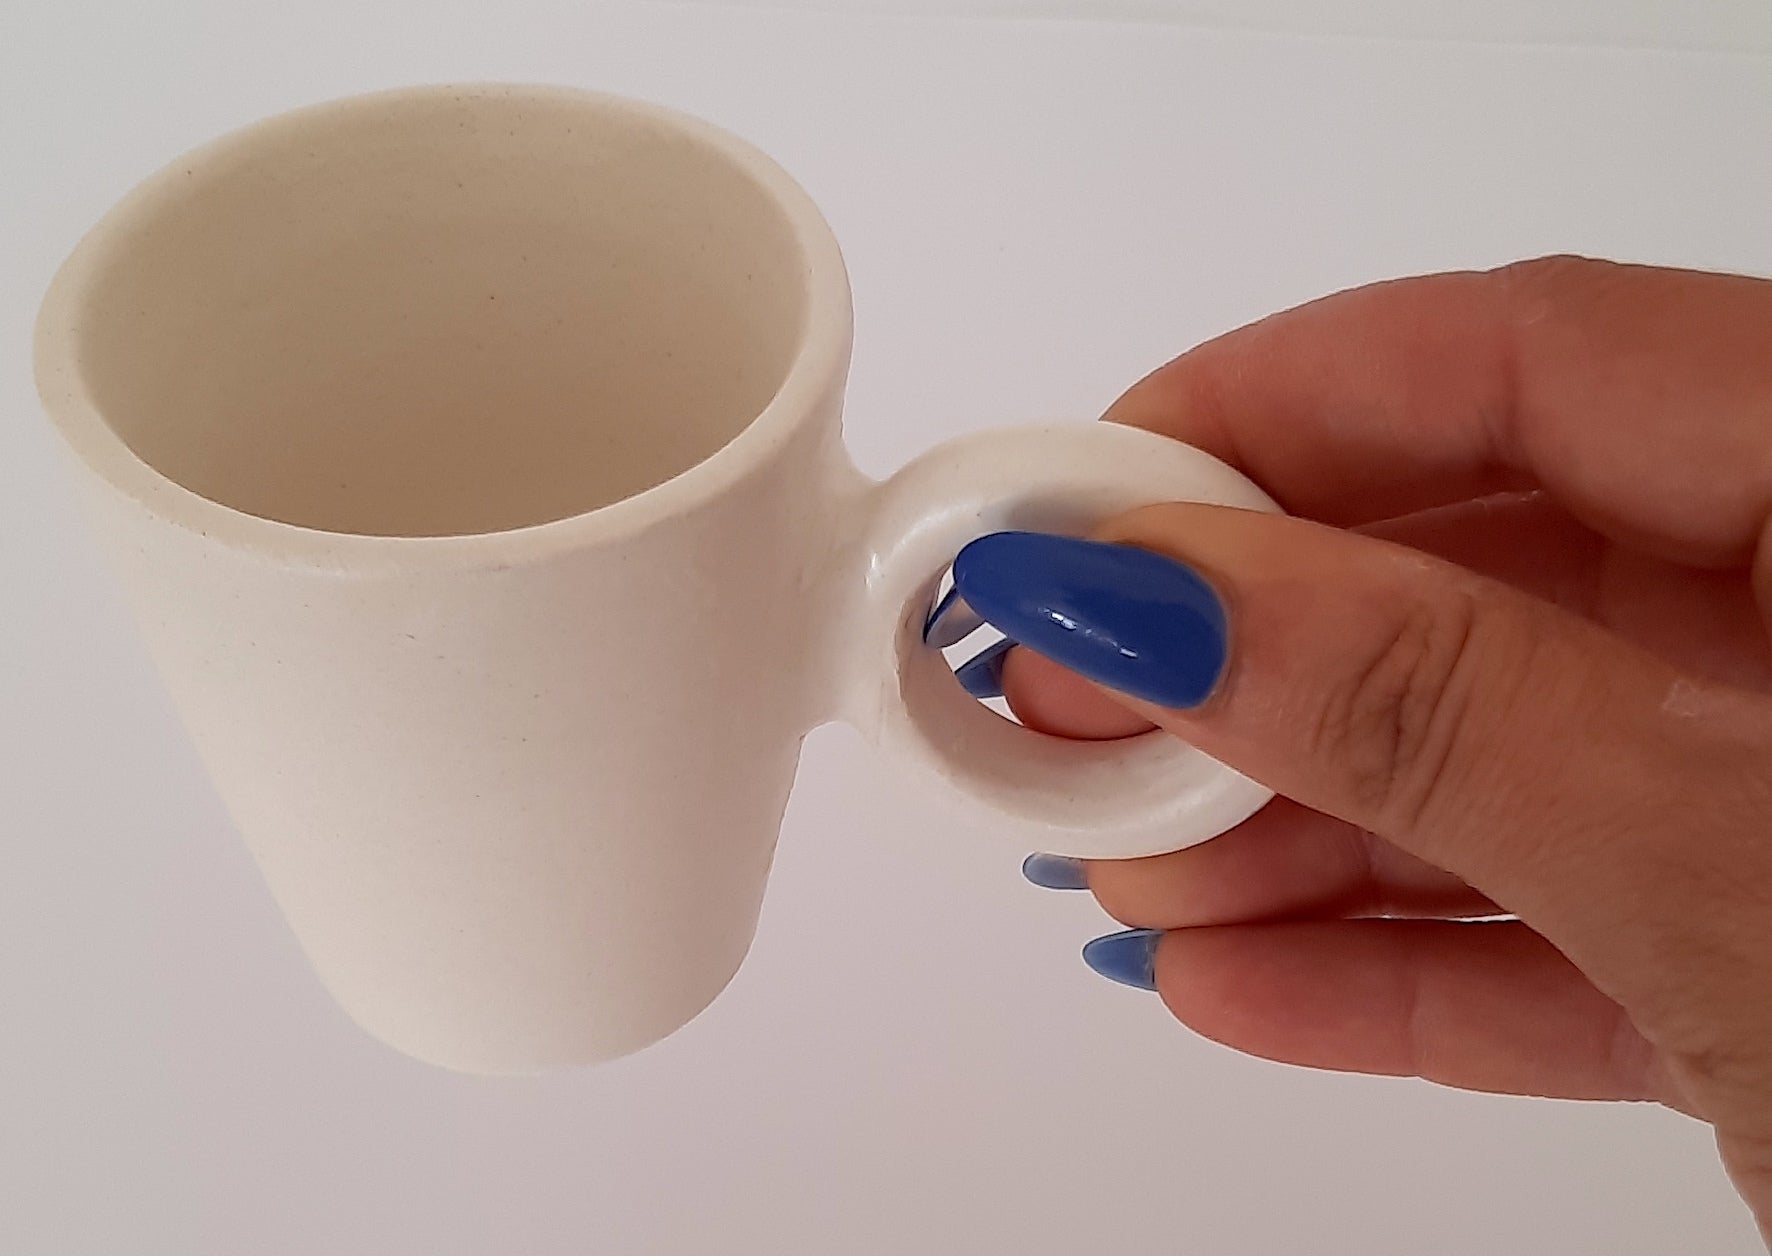 Tasse à café et soucoupe en céramique blanche mate NUAGE Blanc